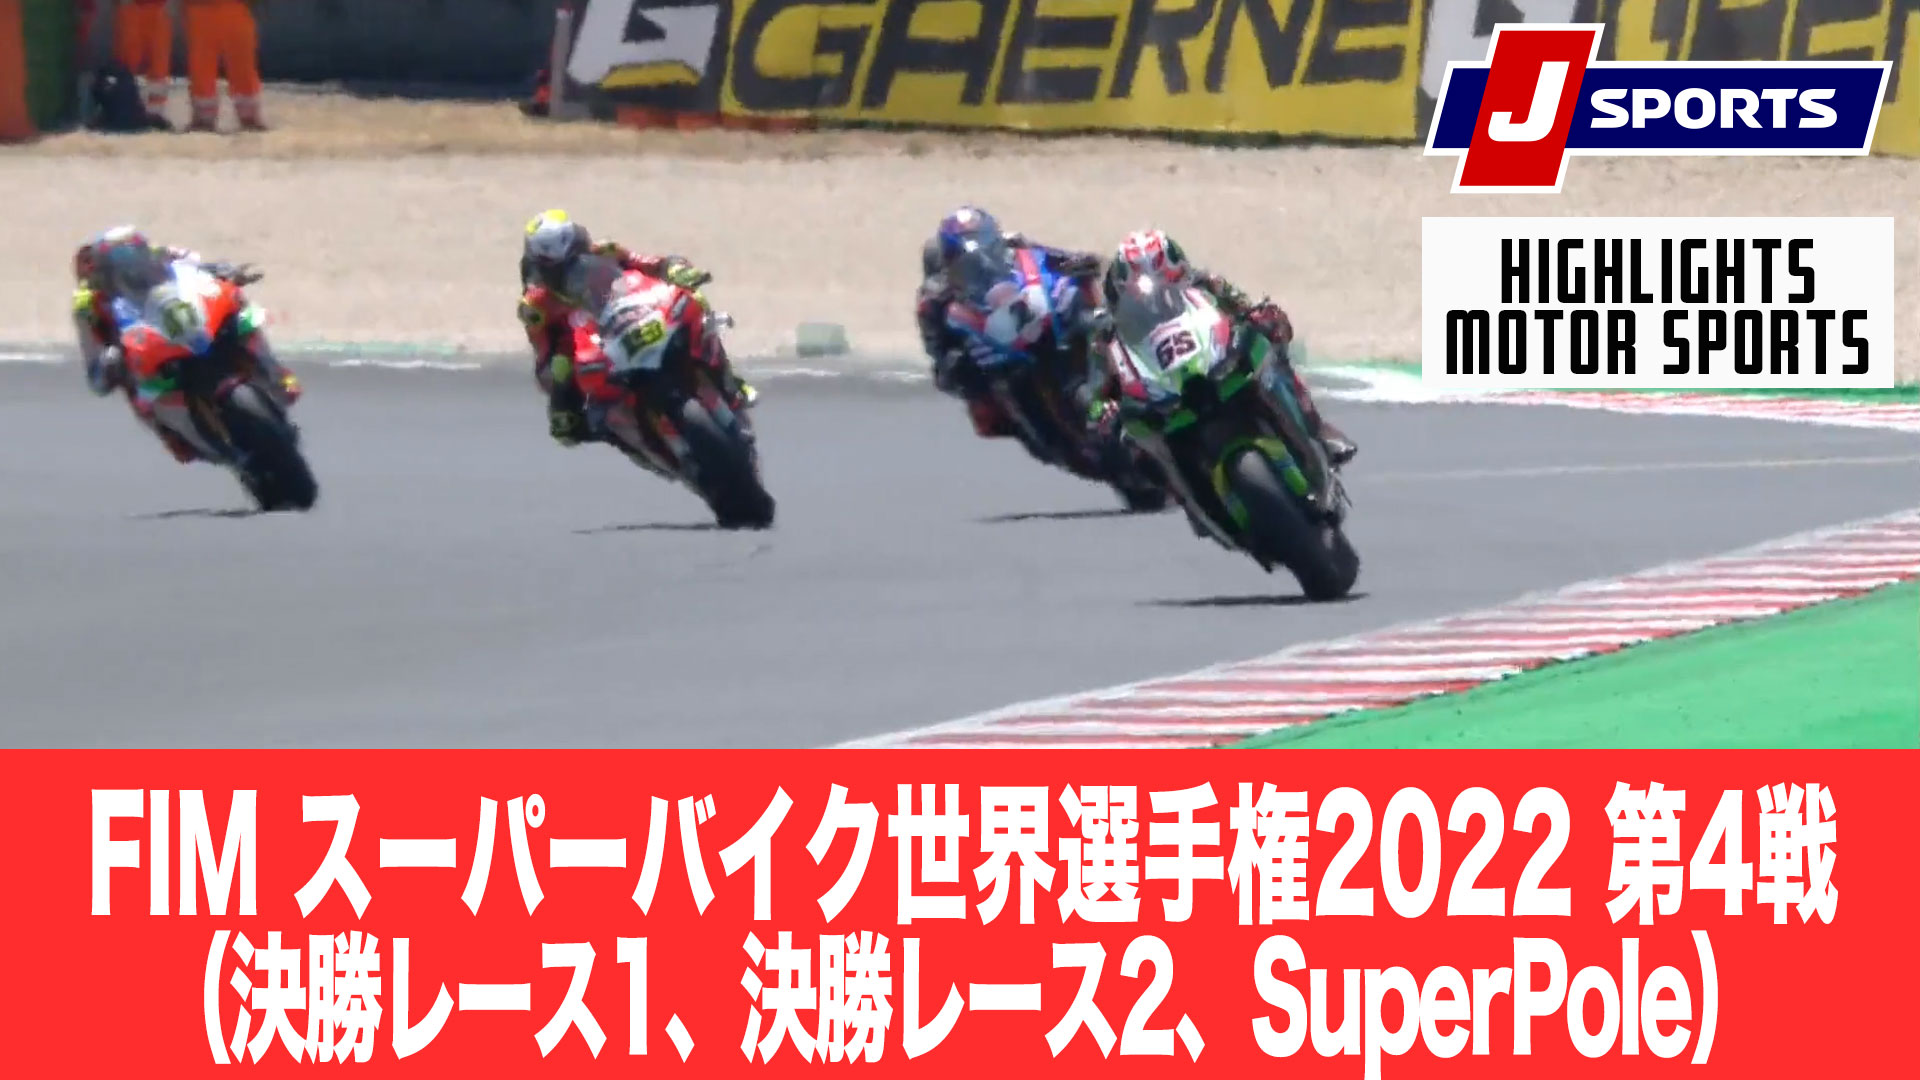 【ハイライト】FIM スーパーバイク世界選手権2022 第4戦 （決勝レース1、決勝レース2、SuperPole）